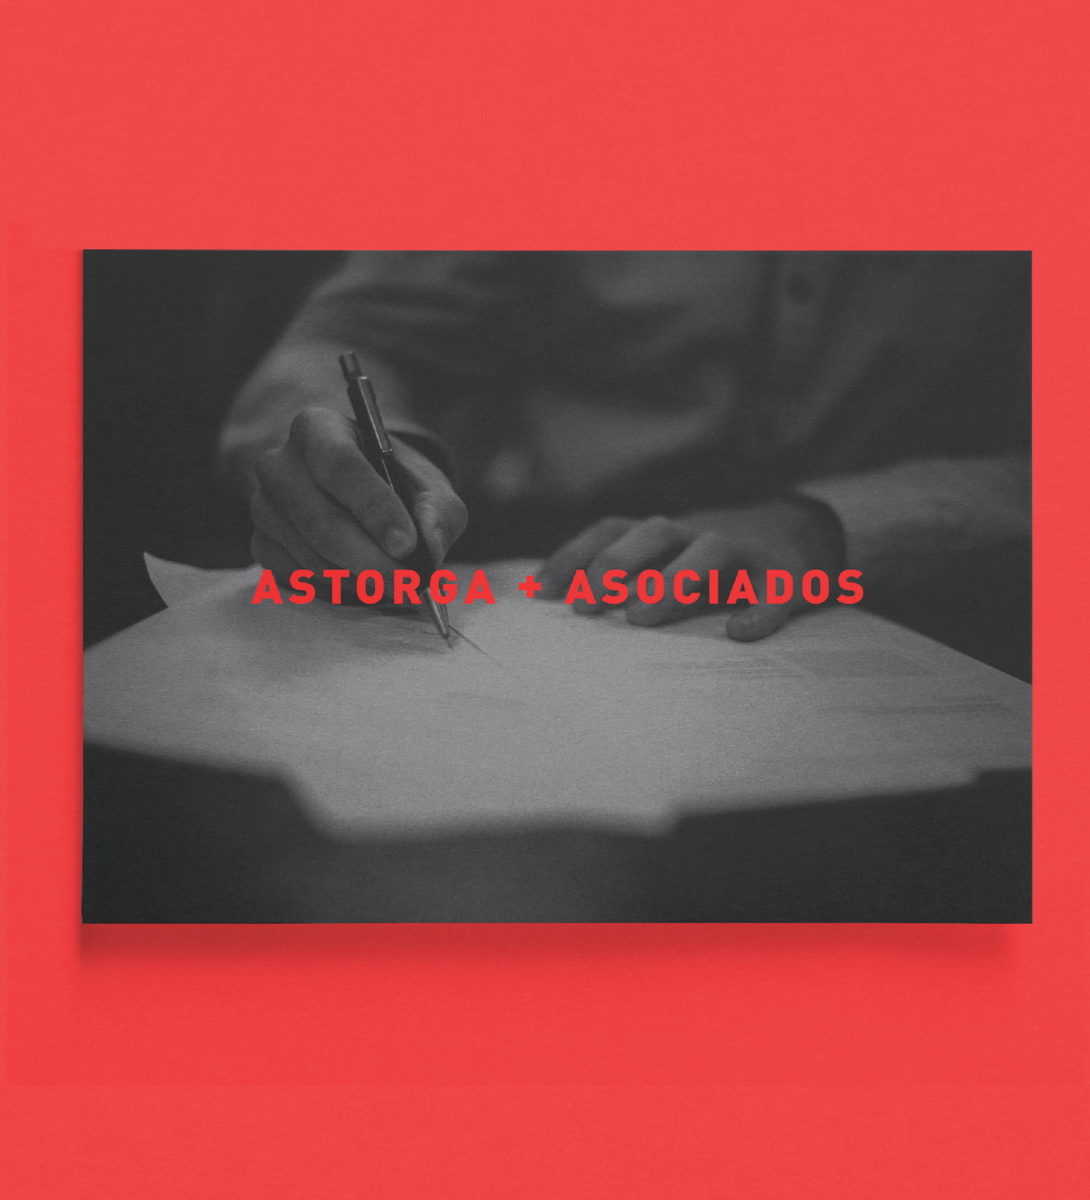 Astorga + Asociados